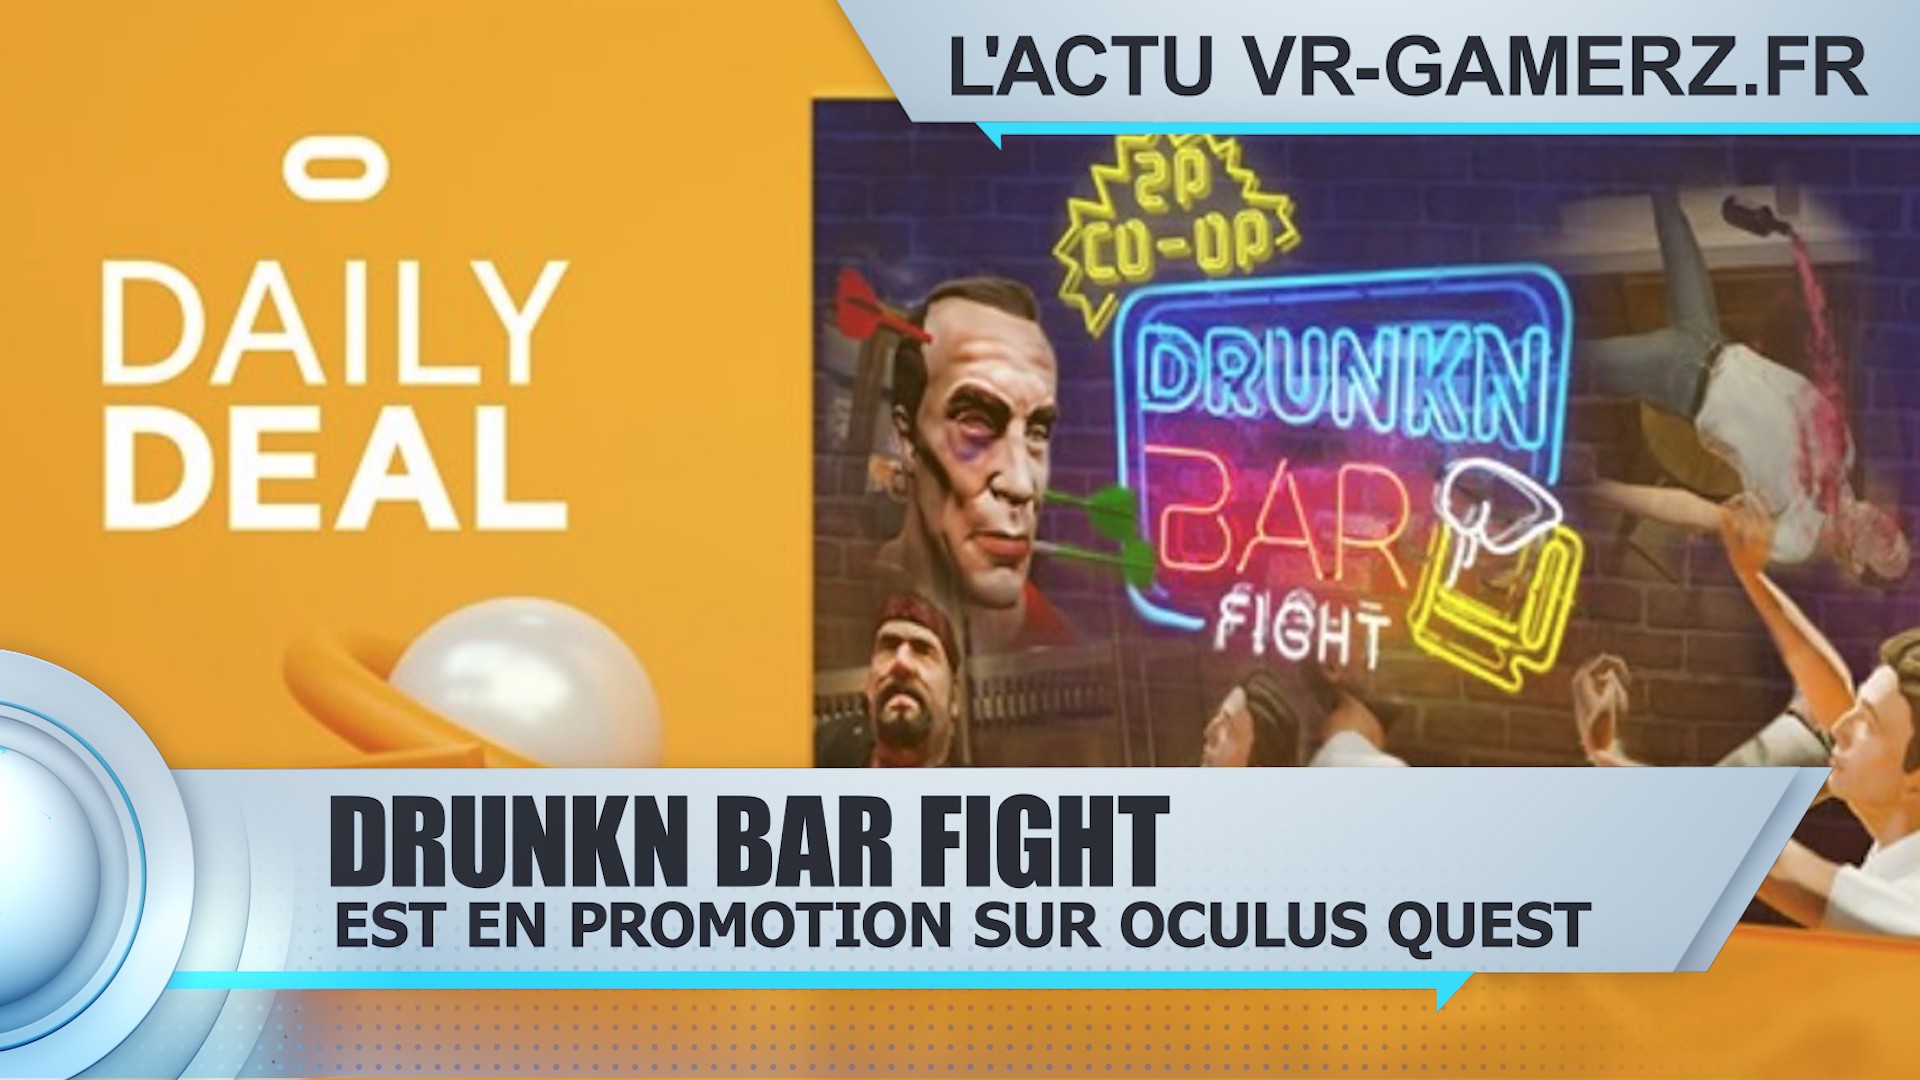 Drunkn Bar Fight est en promotion sur Oculus quest